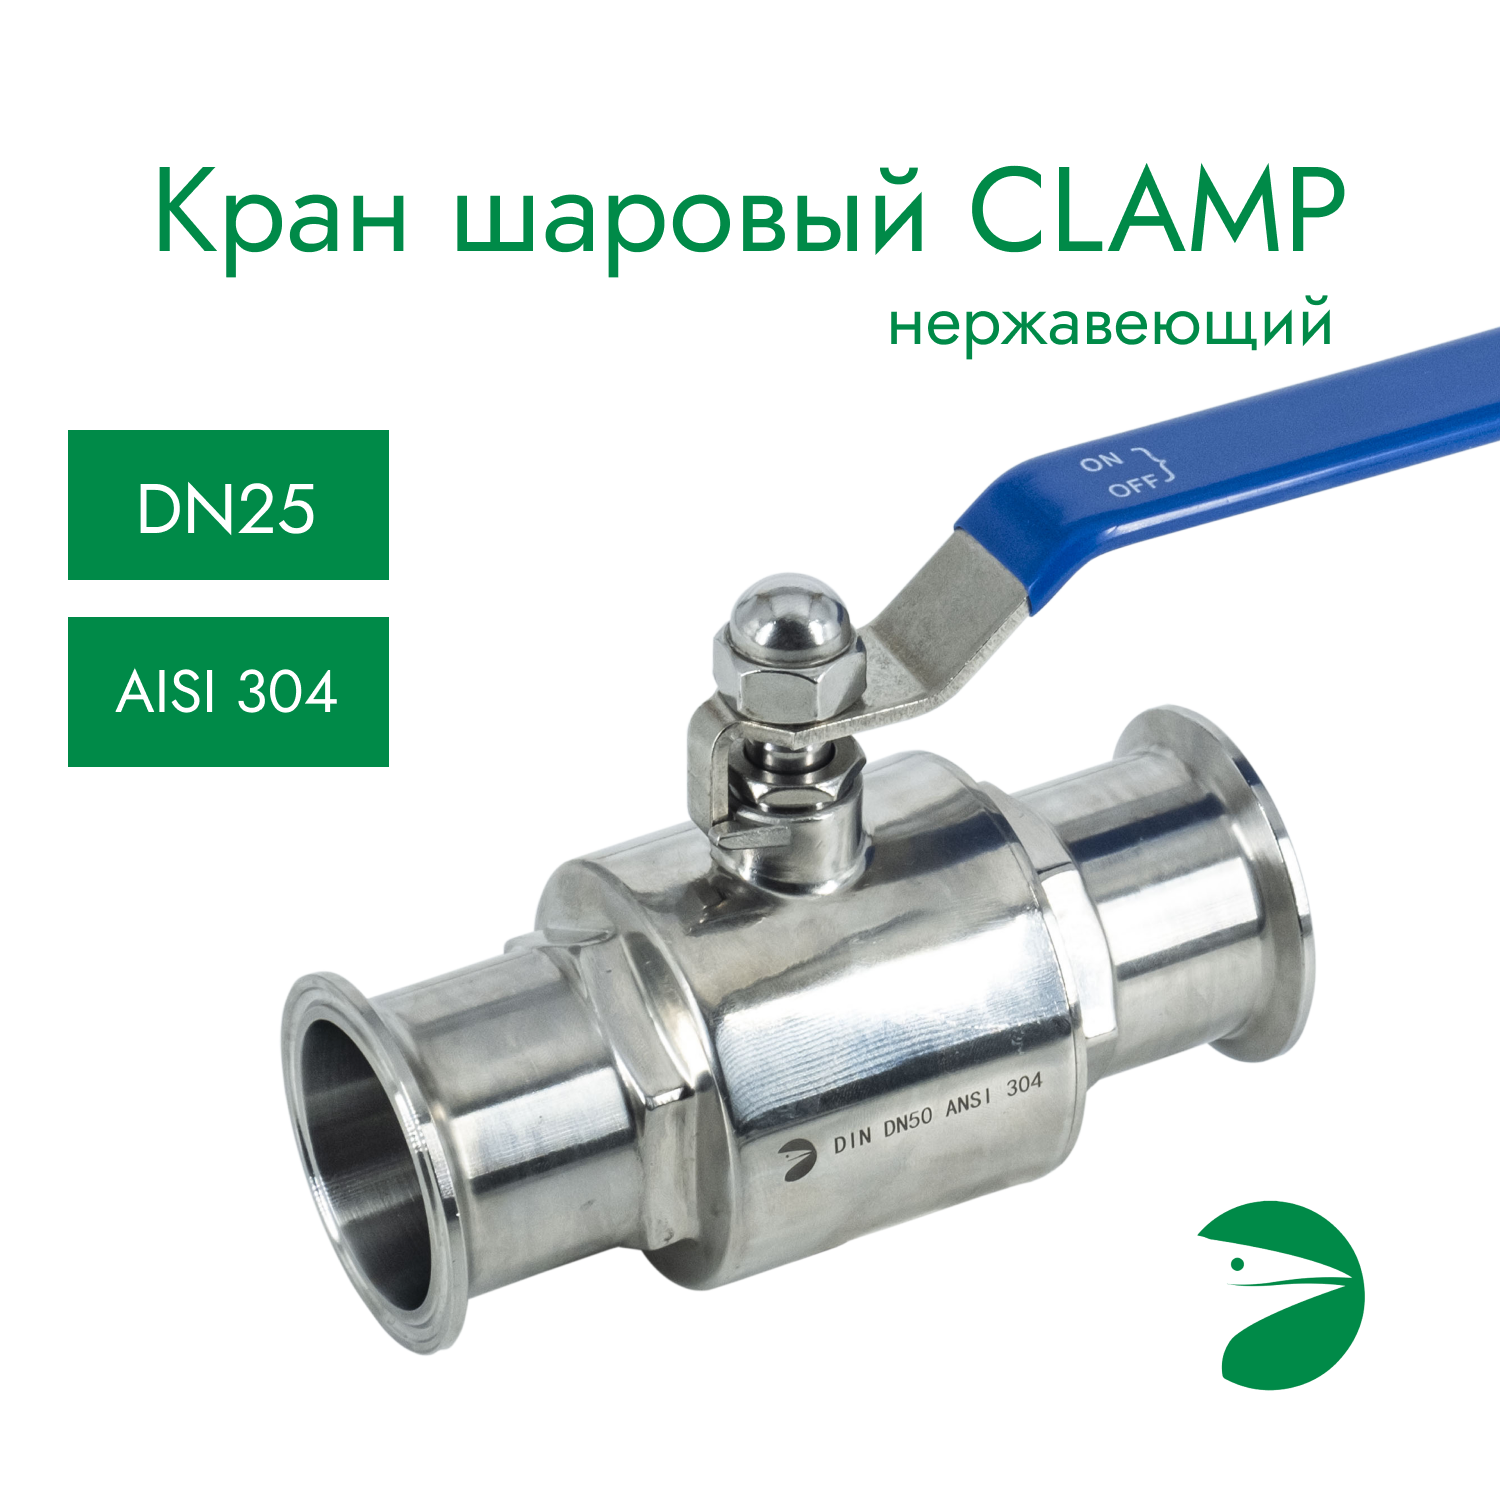 Кран шаровый Clamp DIN32676 нержавеющий, AISI304 DN25 (28мм), (CF8), PN8